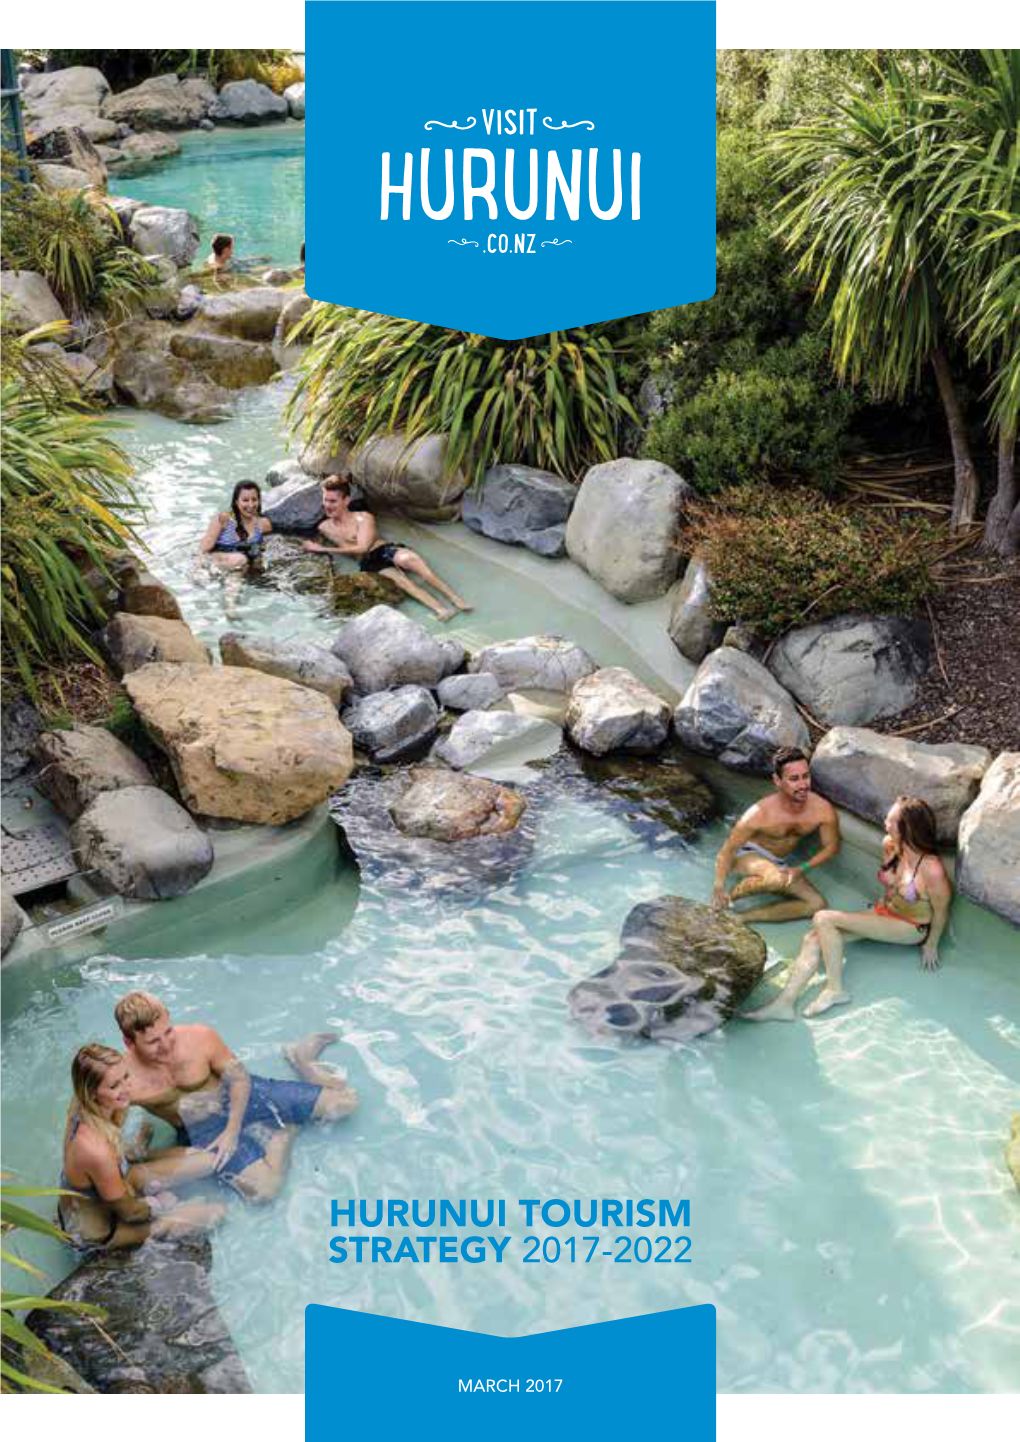 Hurunui Tourism Strategy 2017-2022